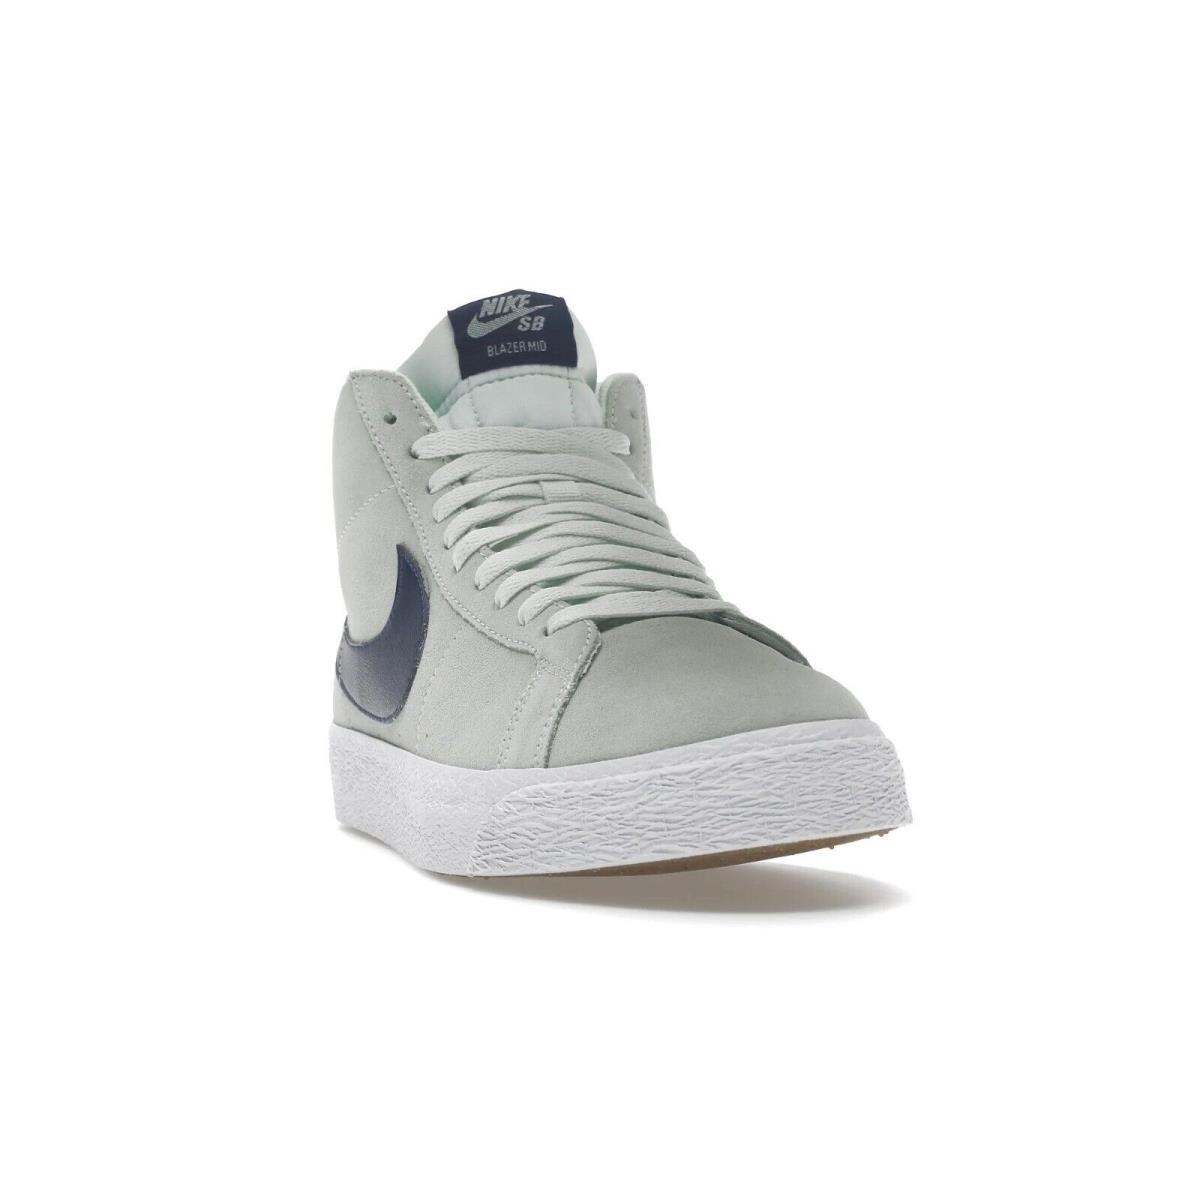 Nike SB Zoom Blazer Mid Barely Green Navy Sneakers 864349-303 855 Men`s Shoes - Barely Green/Navy-Barely Green